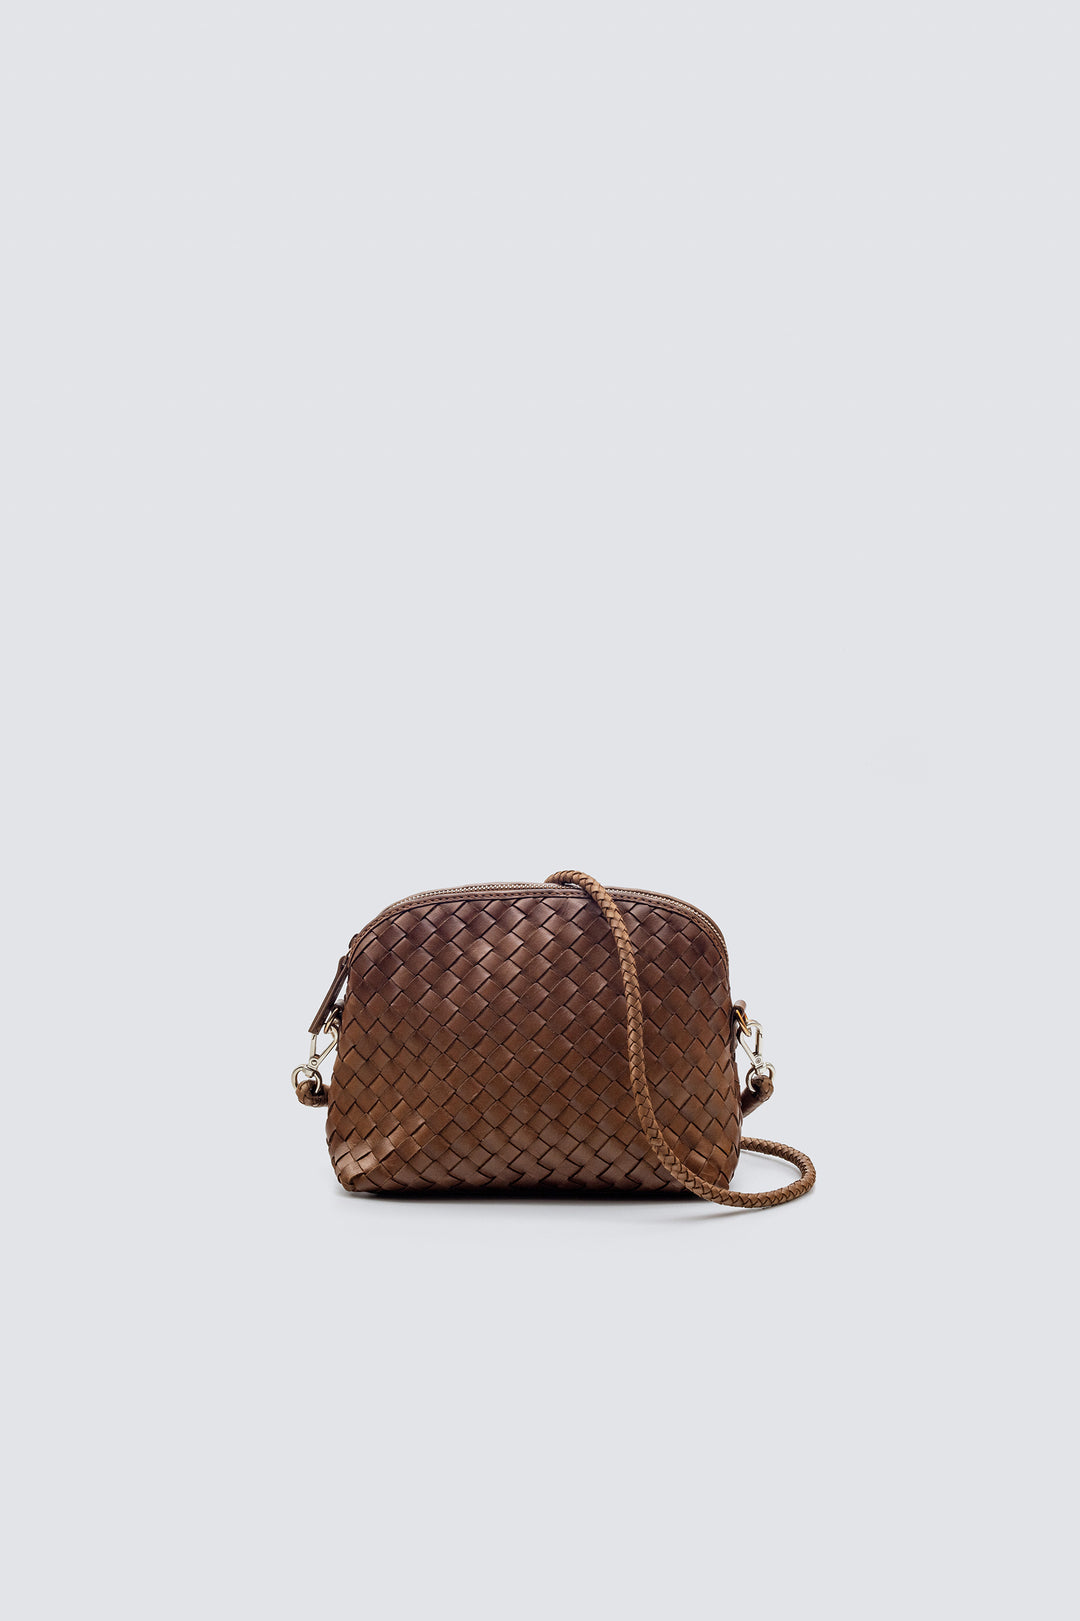 Dragon Diffusion woven leather bag handmade - Fellini Pochette Tan